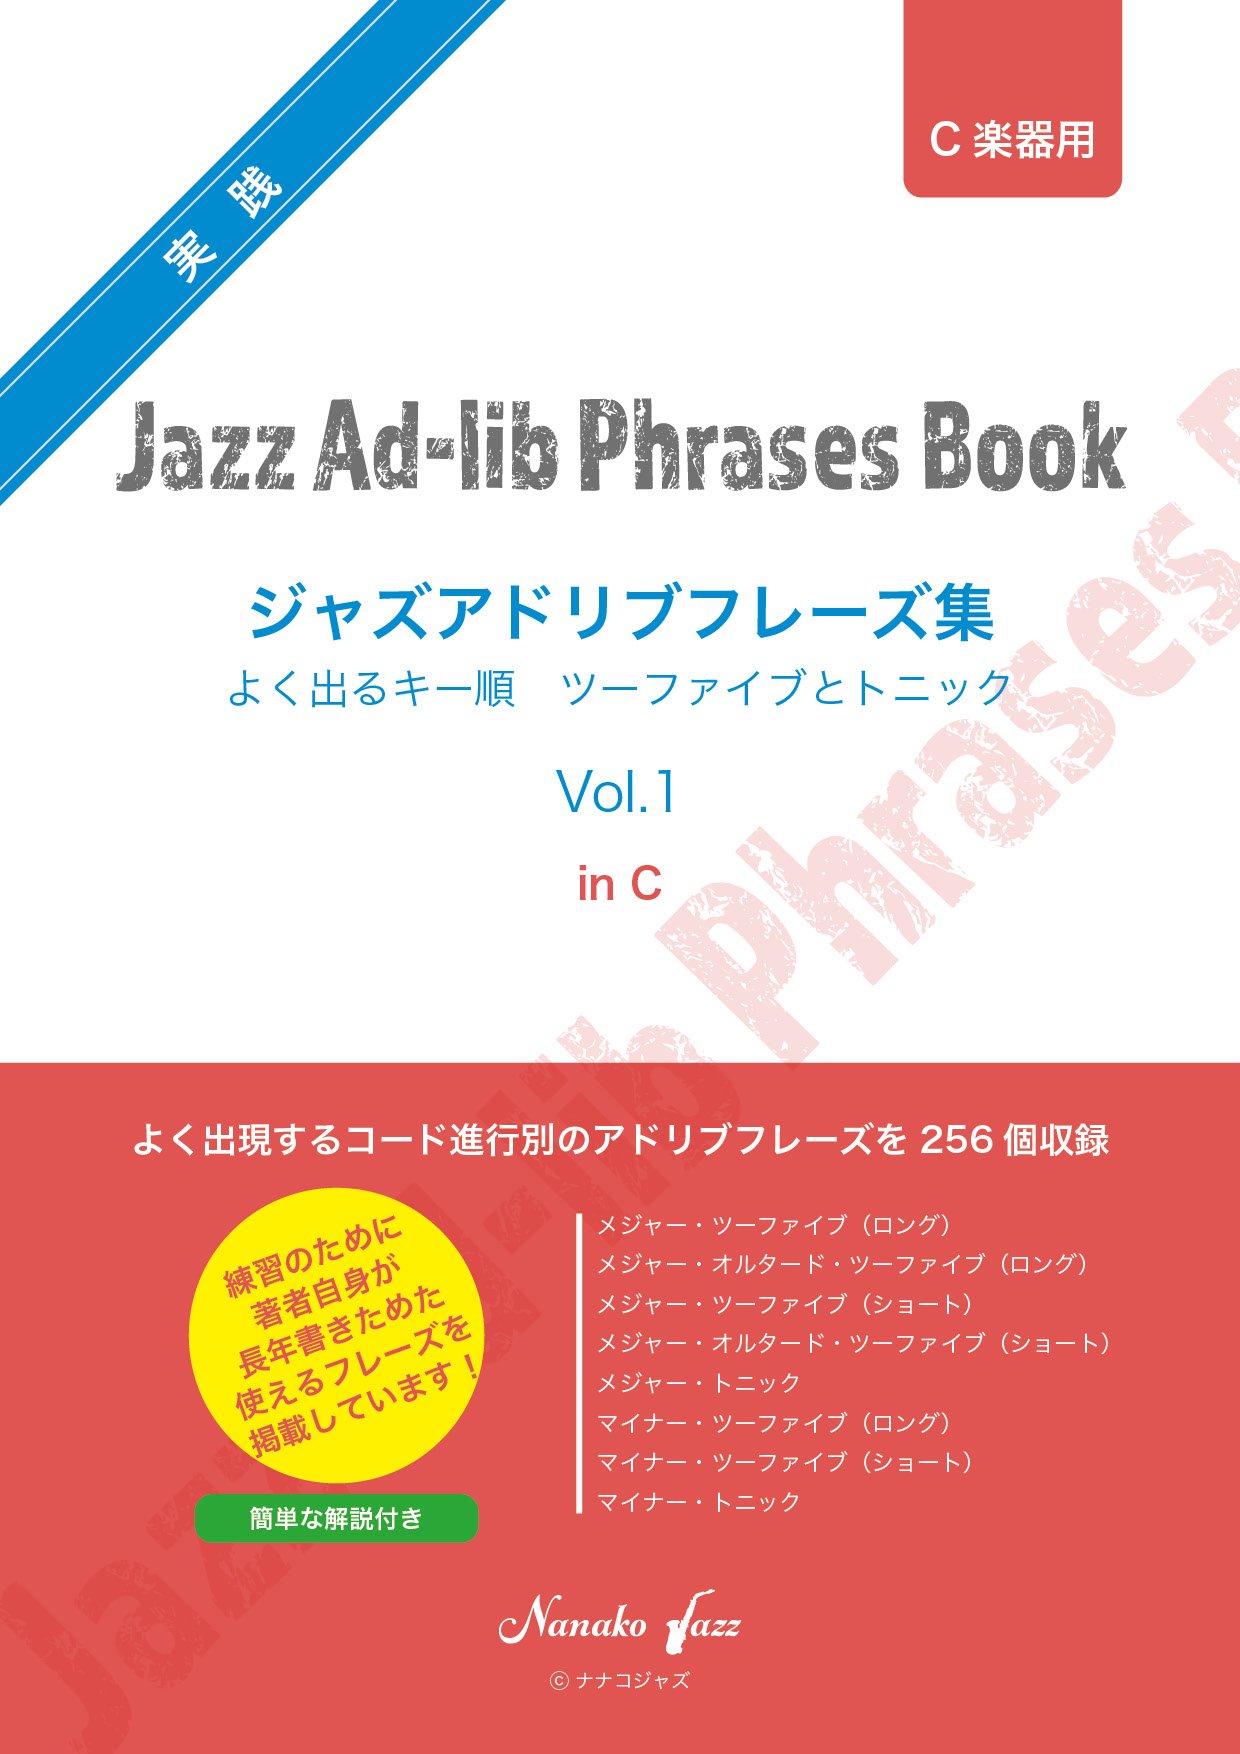 Jazz-Adlib-phrases-vol1-inC_hyoshi